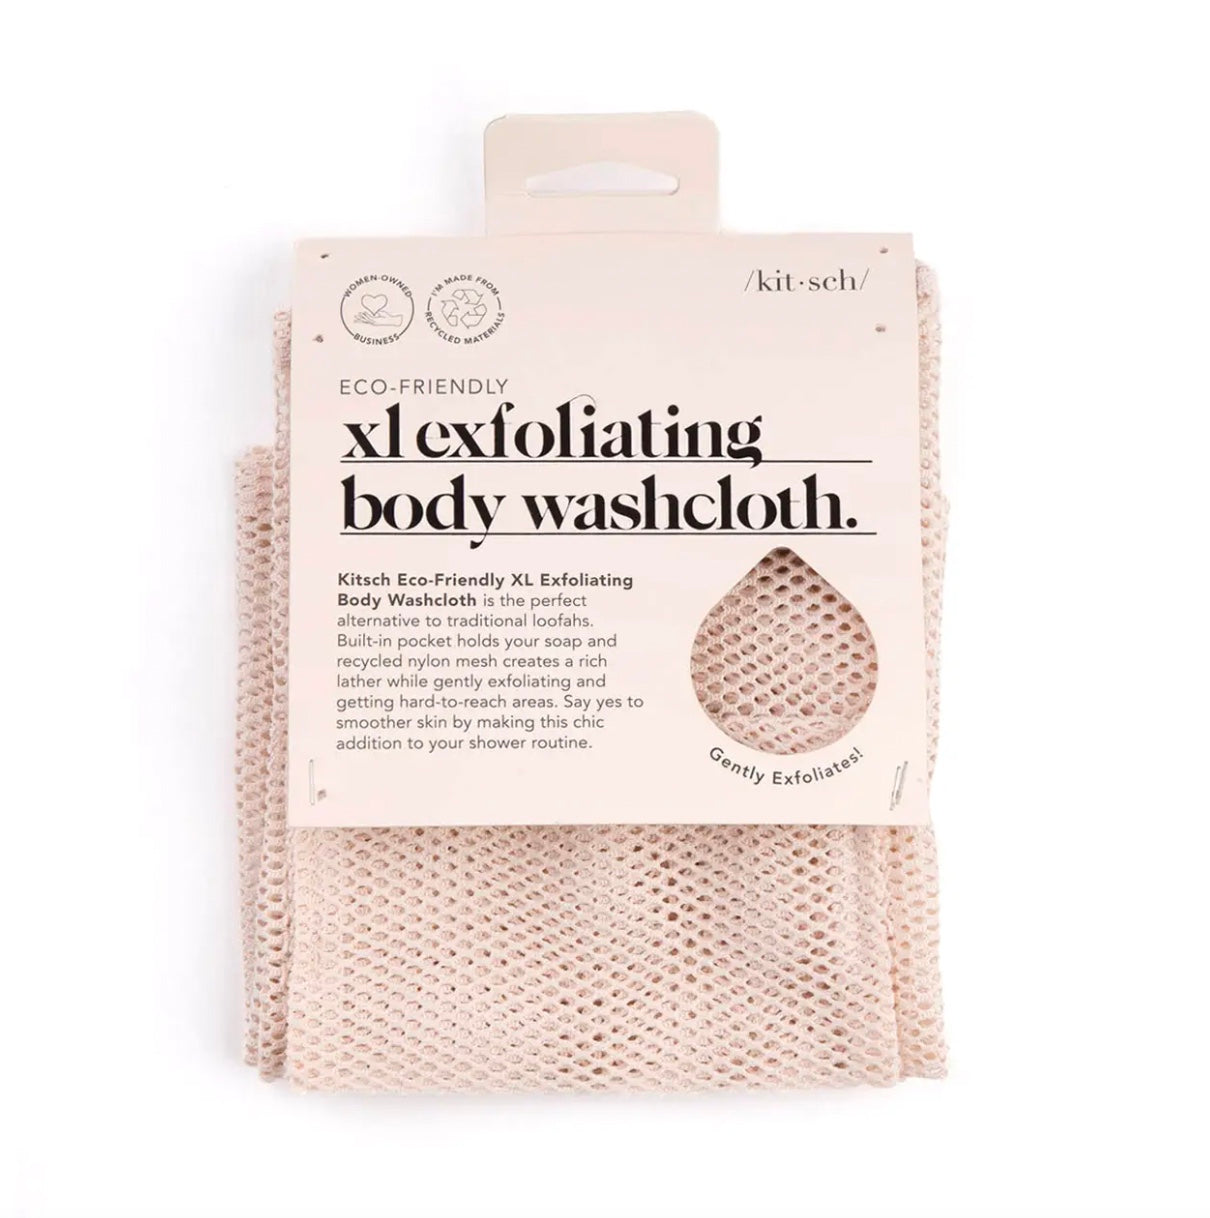 XL Exfoliating Washcloth by Kitsch